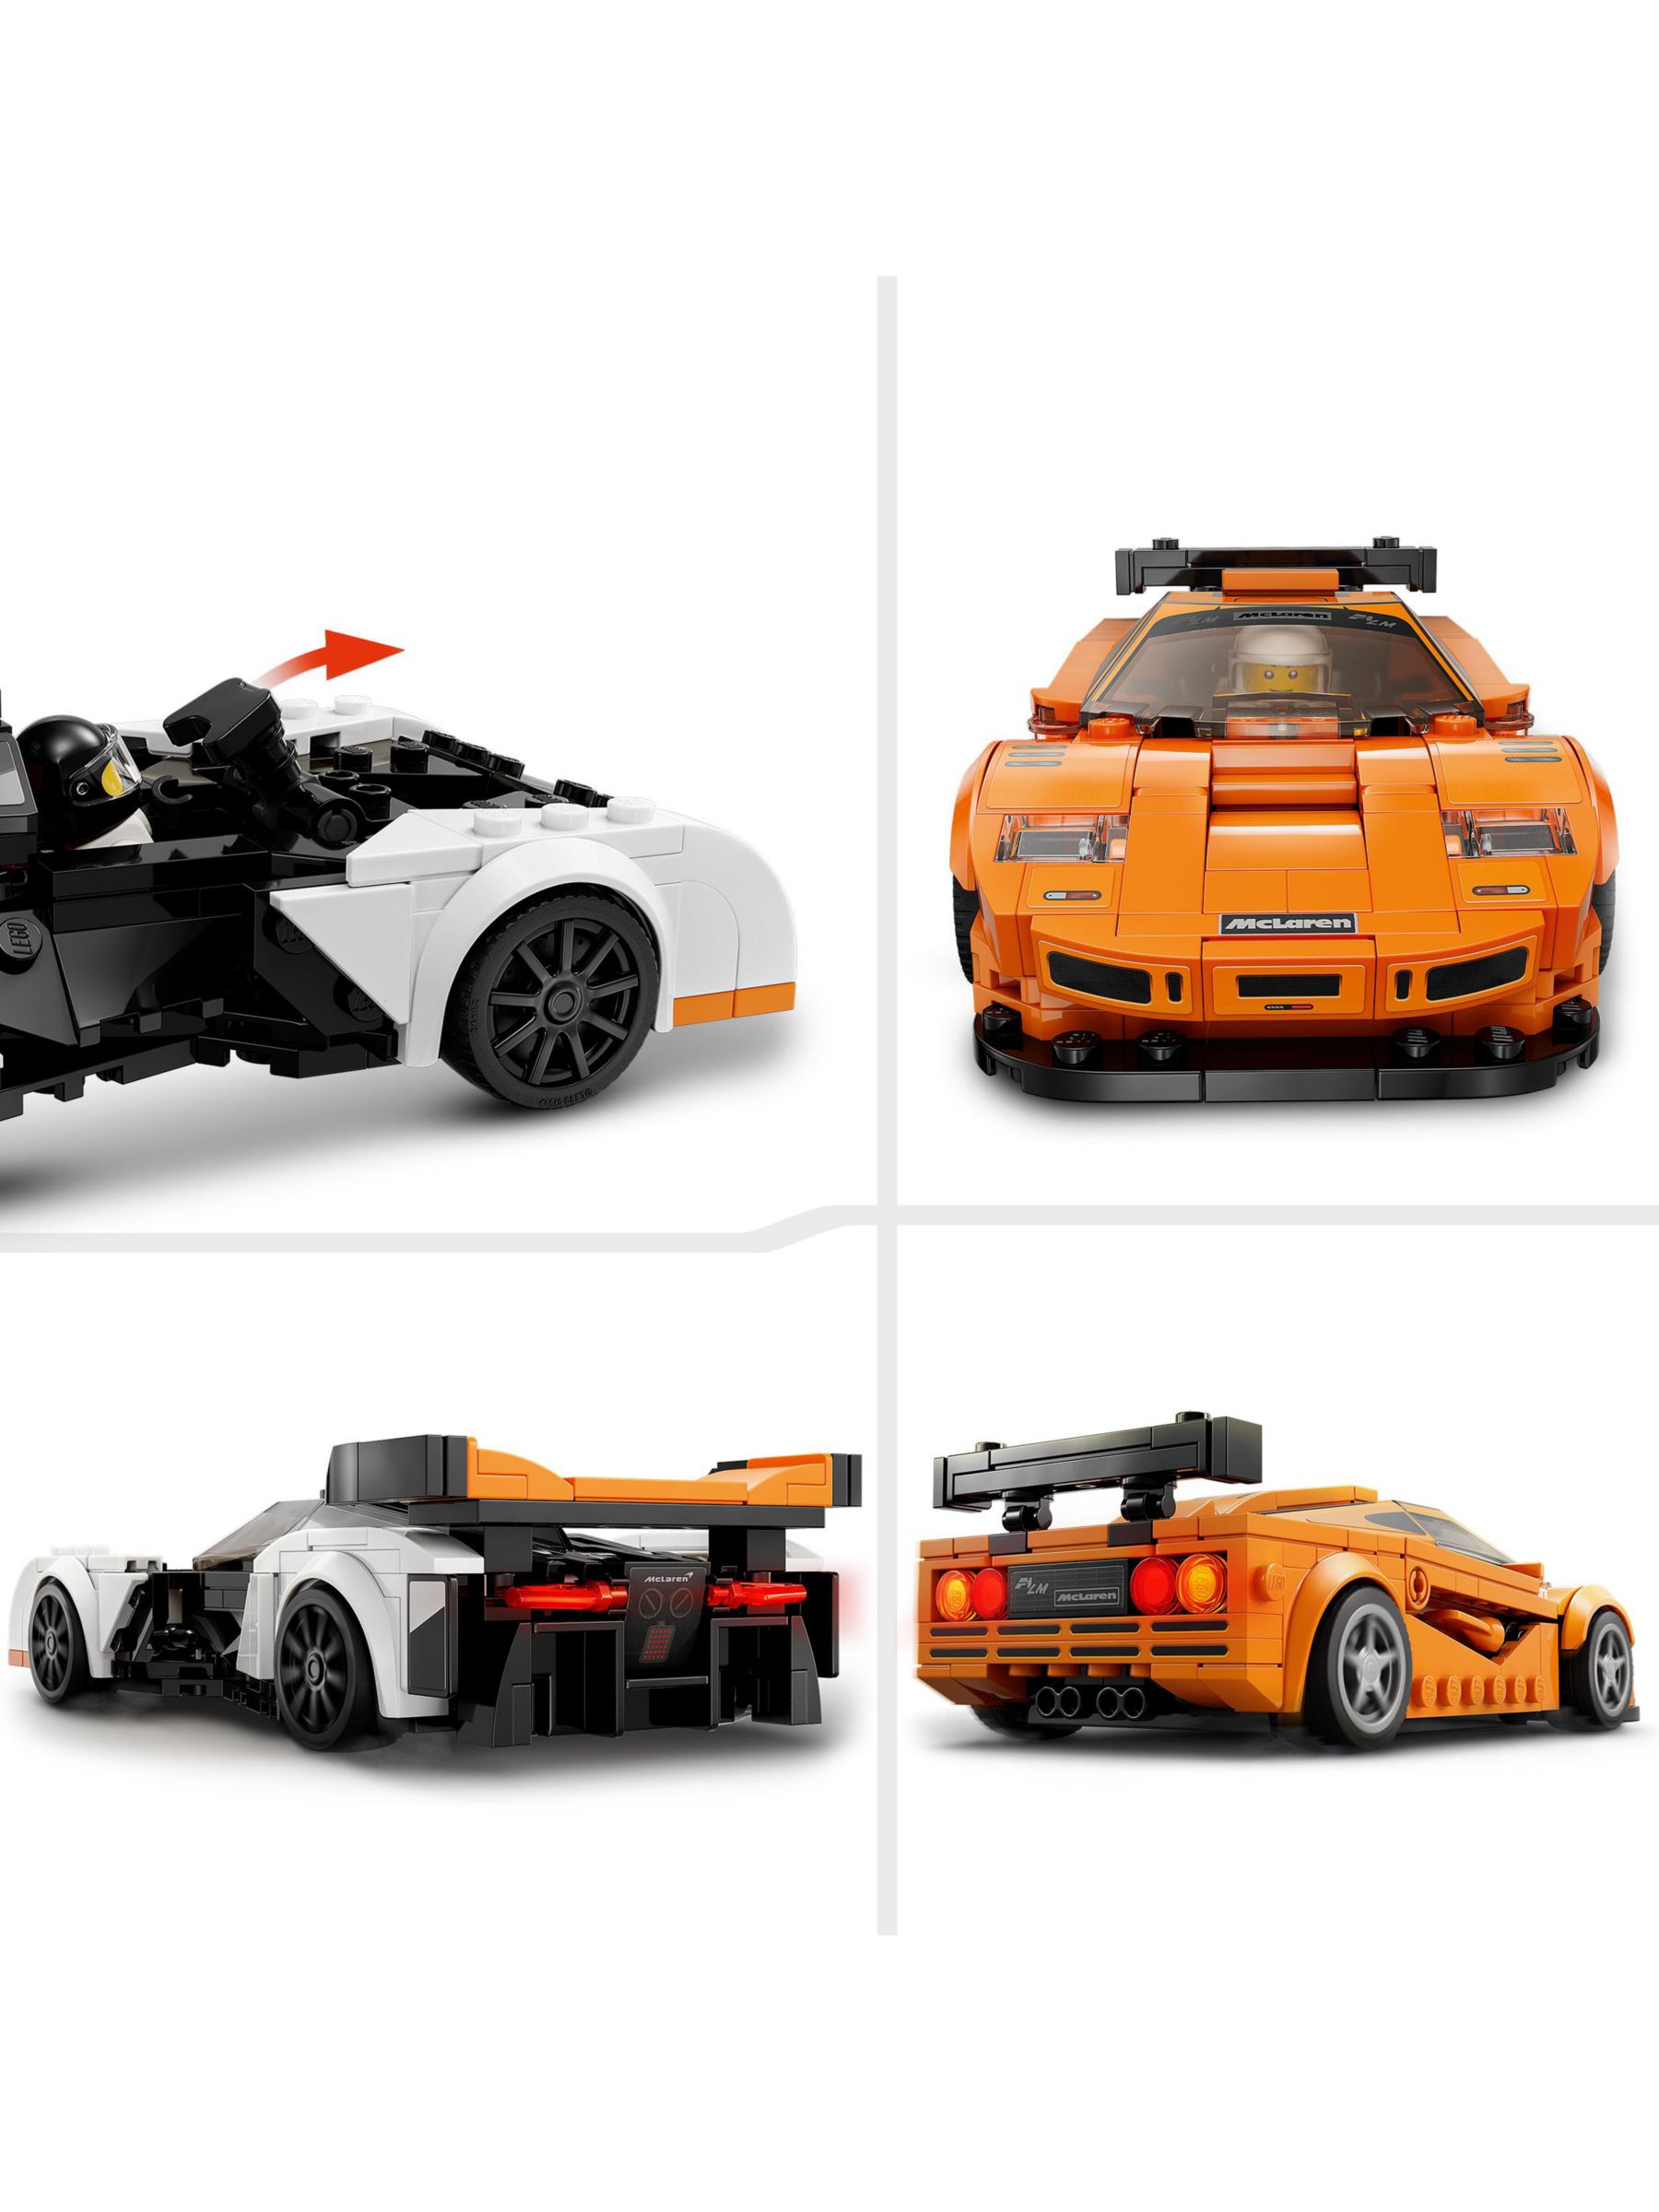 Lego Speed Champions Mclaren Solus Gt Et Mclaren F1 Lm - 76918